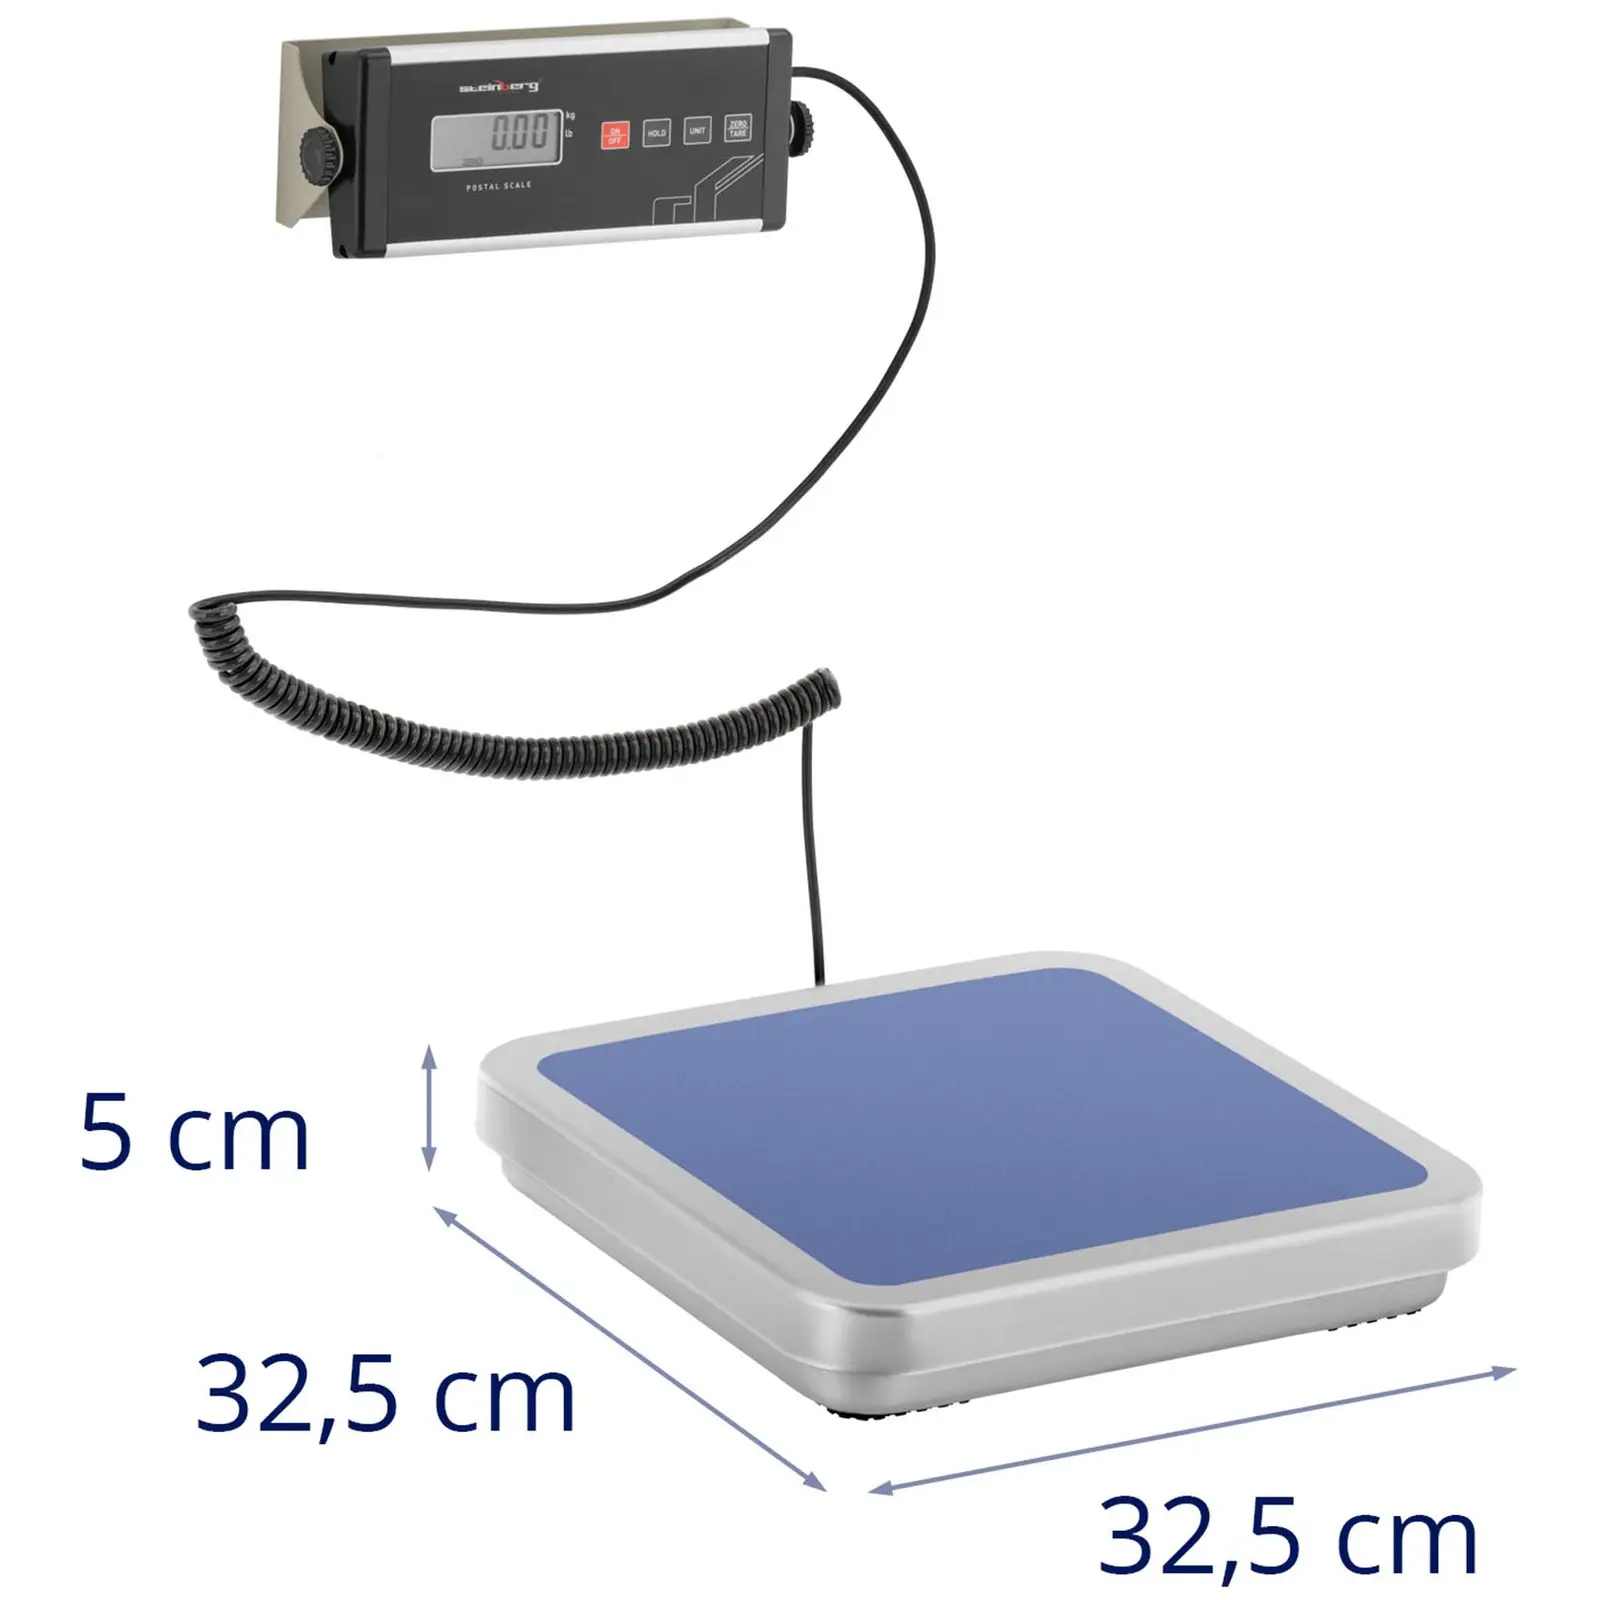 Csomagmérleg - 150 kg / 0,05 kg - 31,5 x 32,5 cm - külső LCD kijelzővel